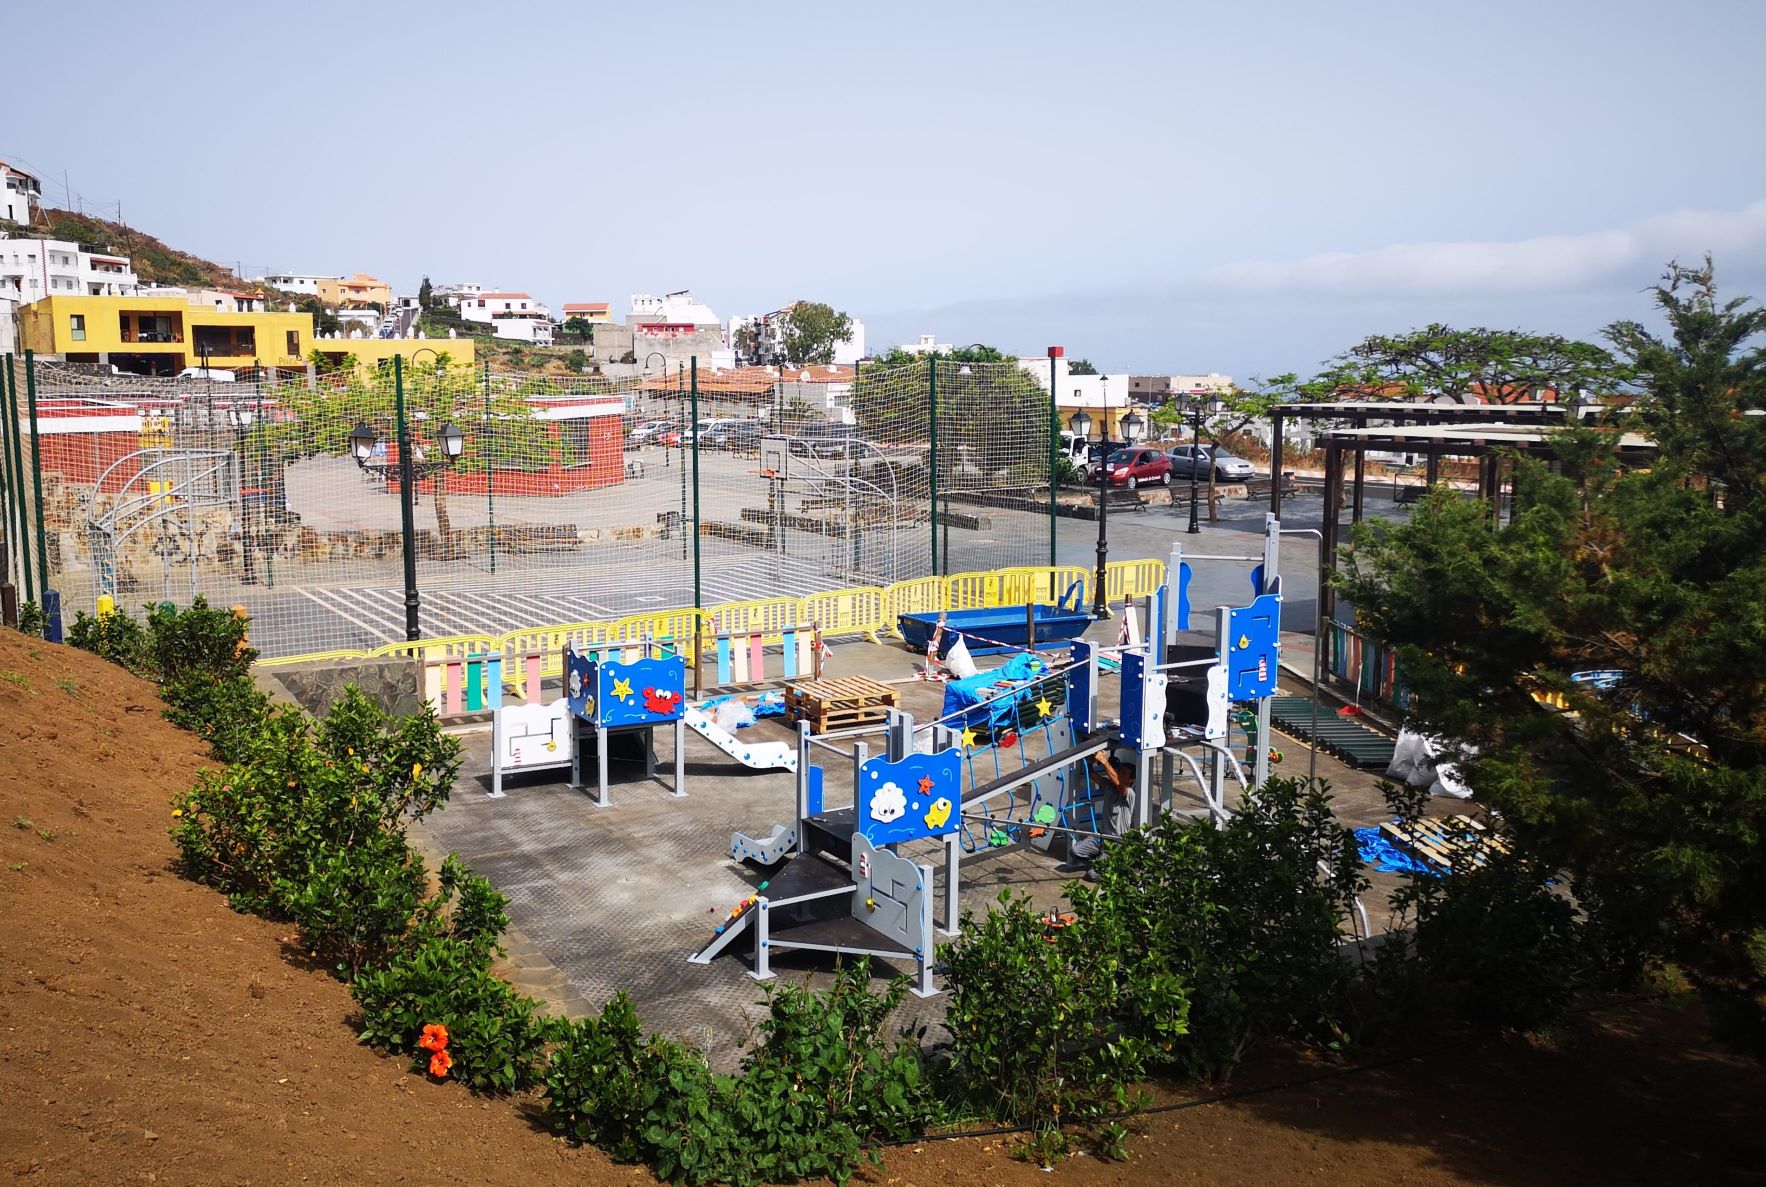 Comienza la obra de mejora del parque infantil de la Plaza Benito Padrón